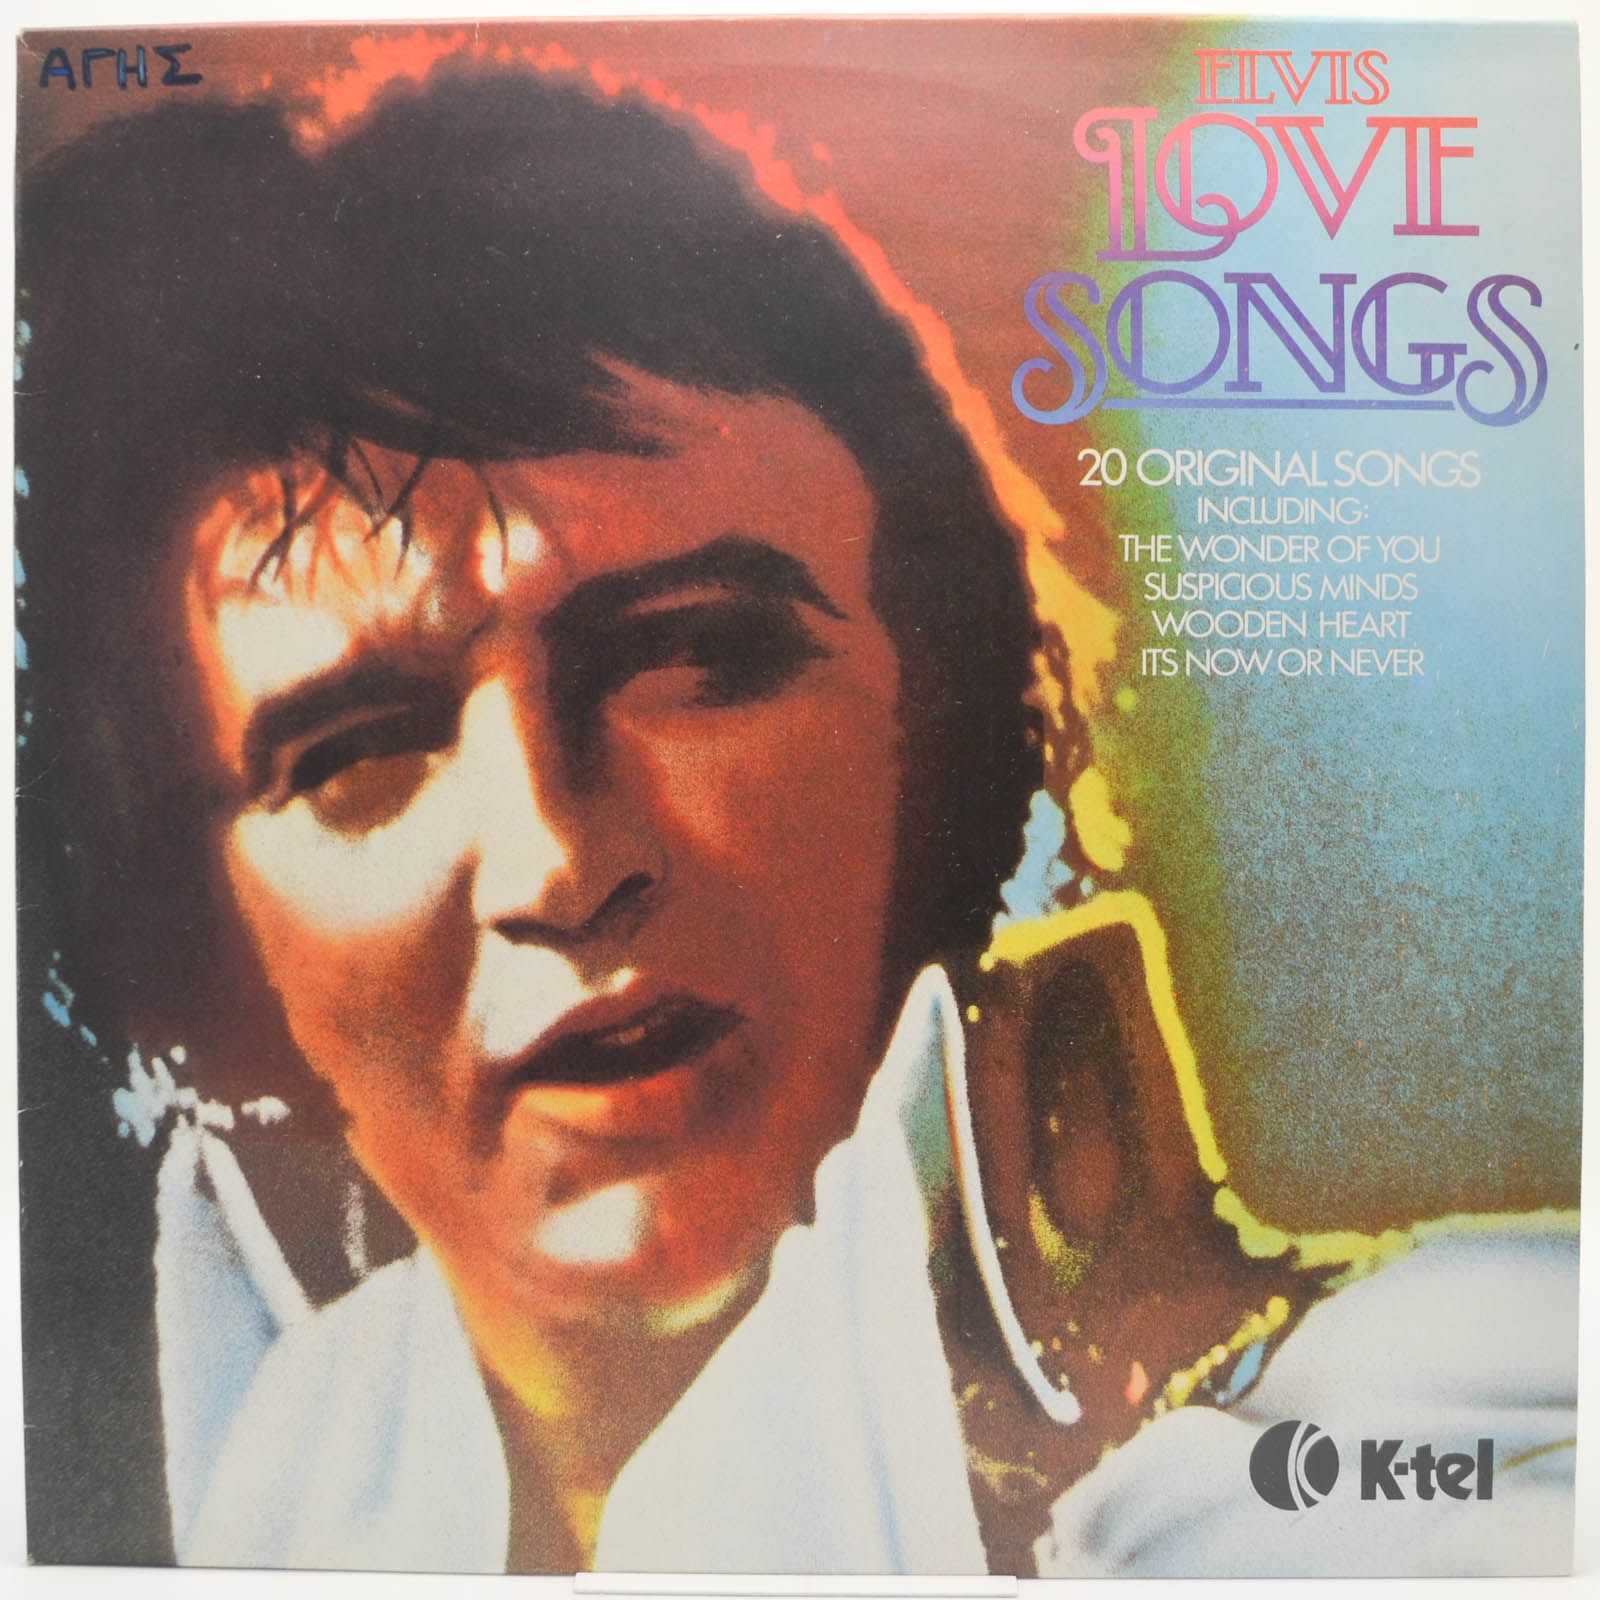 Elvis Presley — Elvis Love Songs (20 Original Songs), 1979